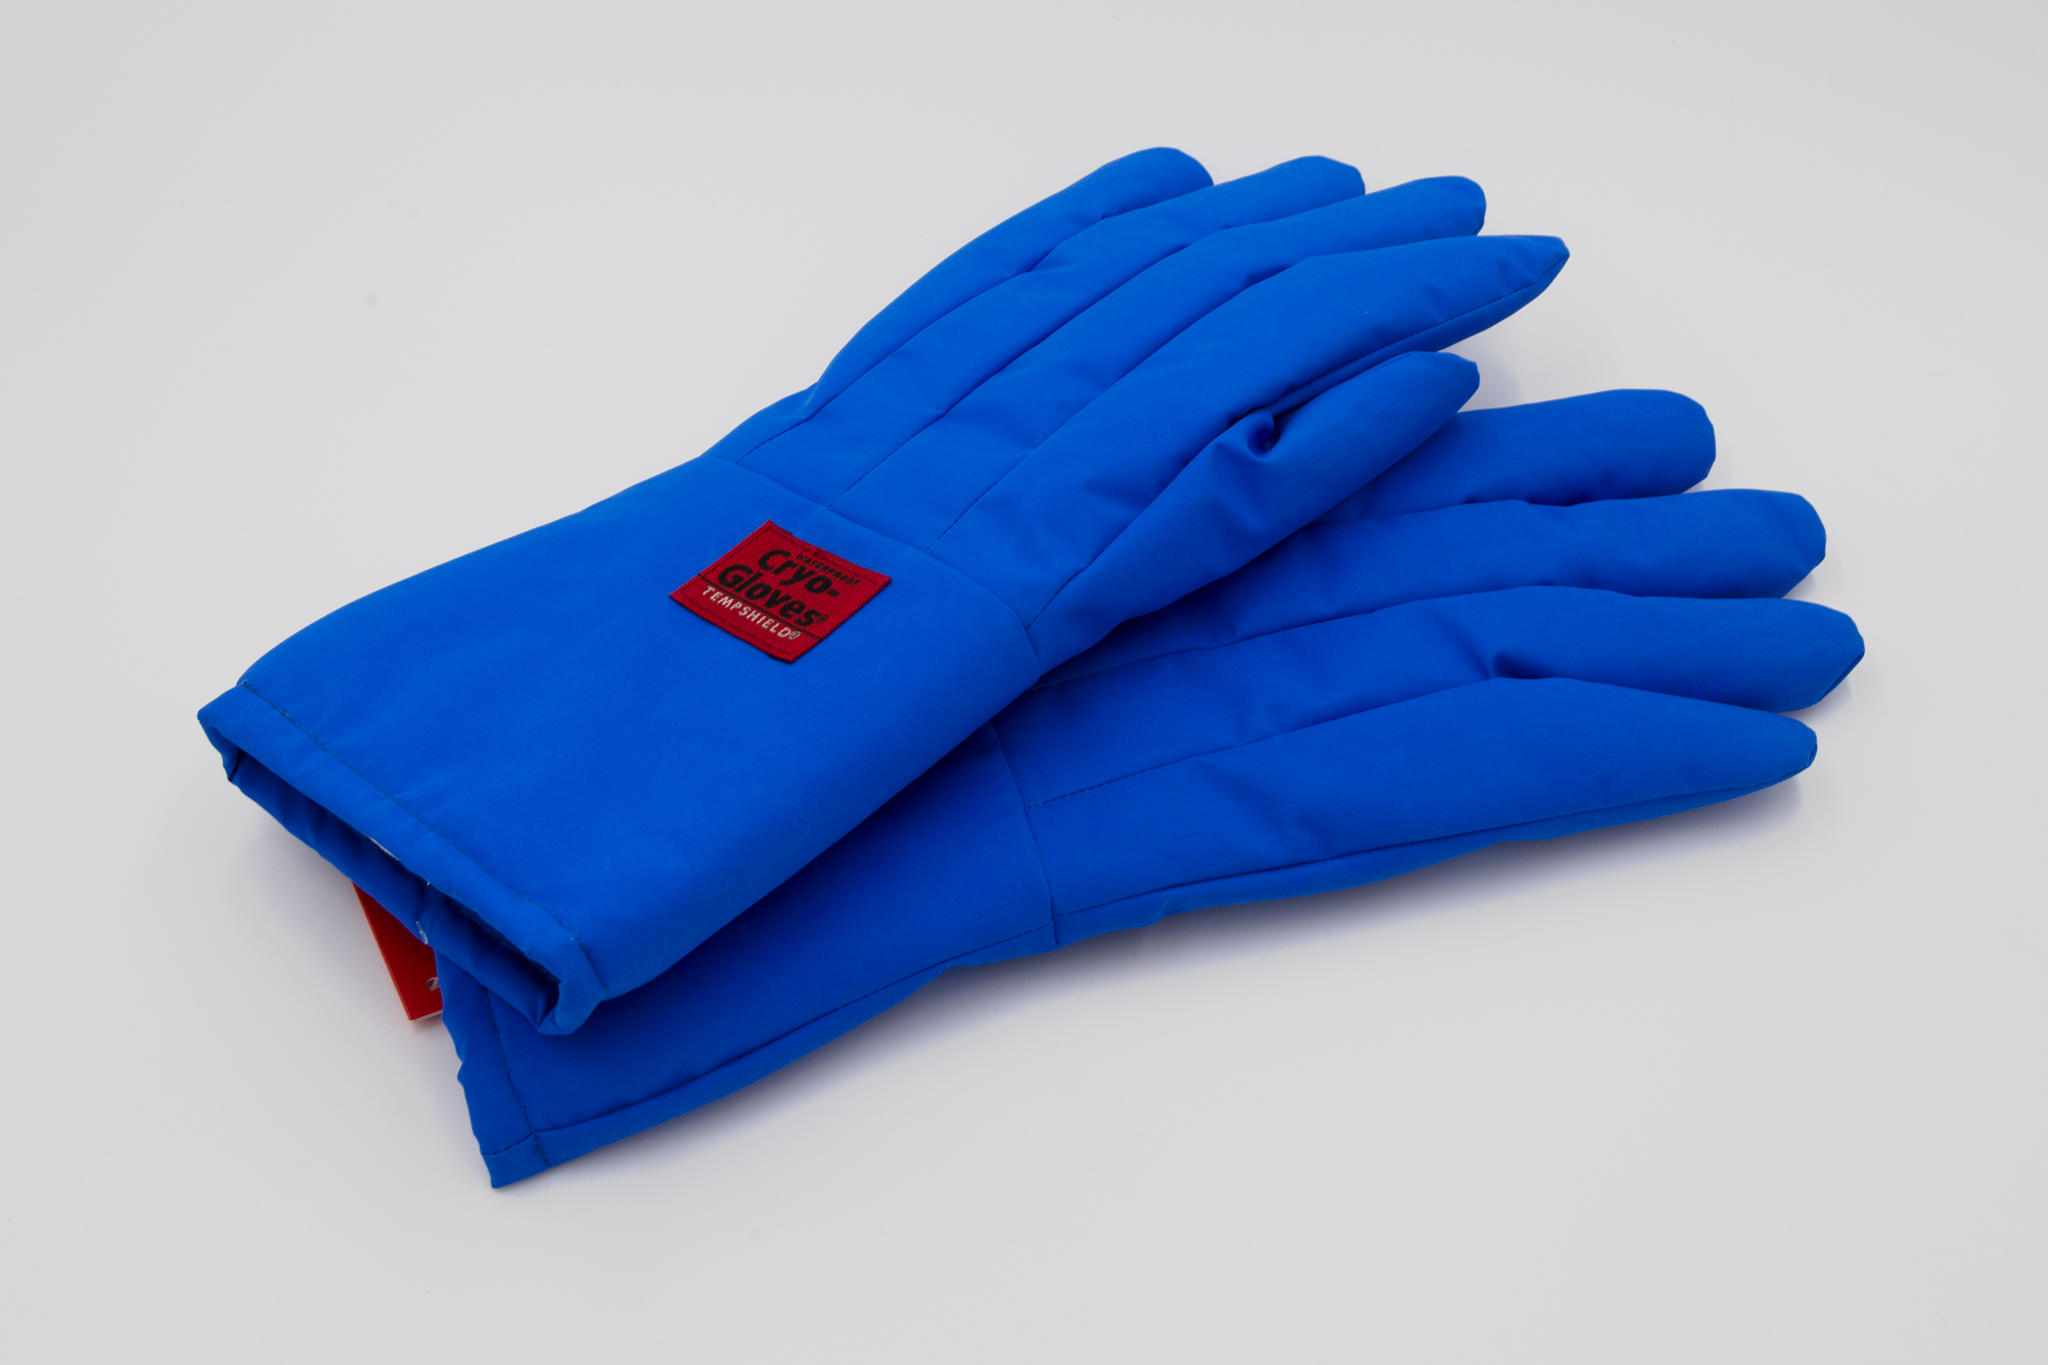 Blue gloves on white background